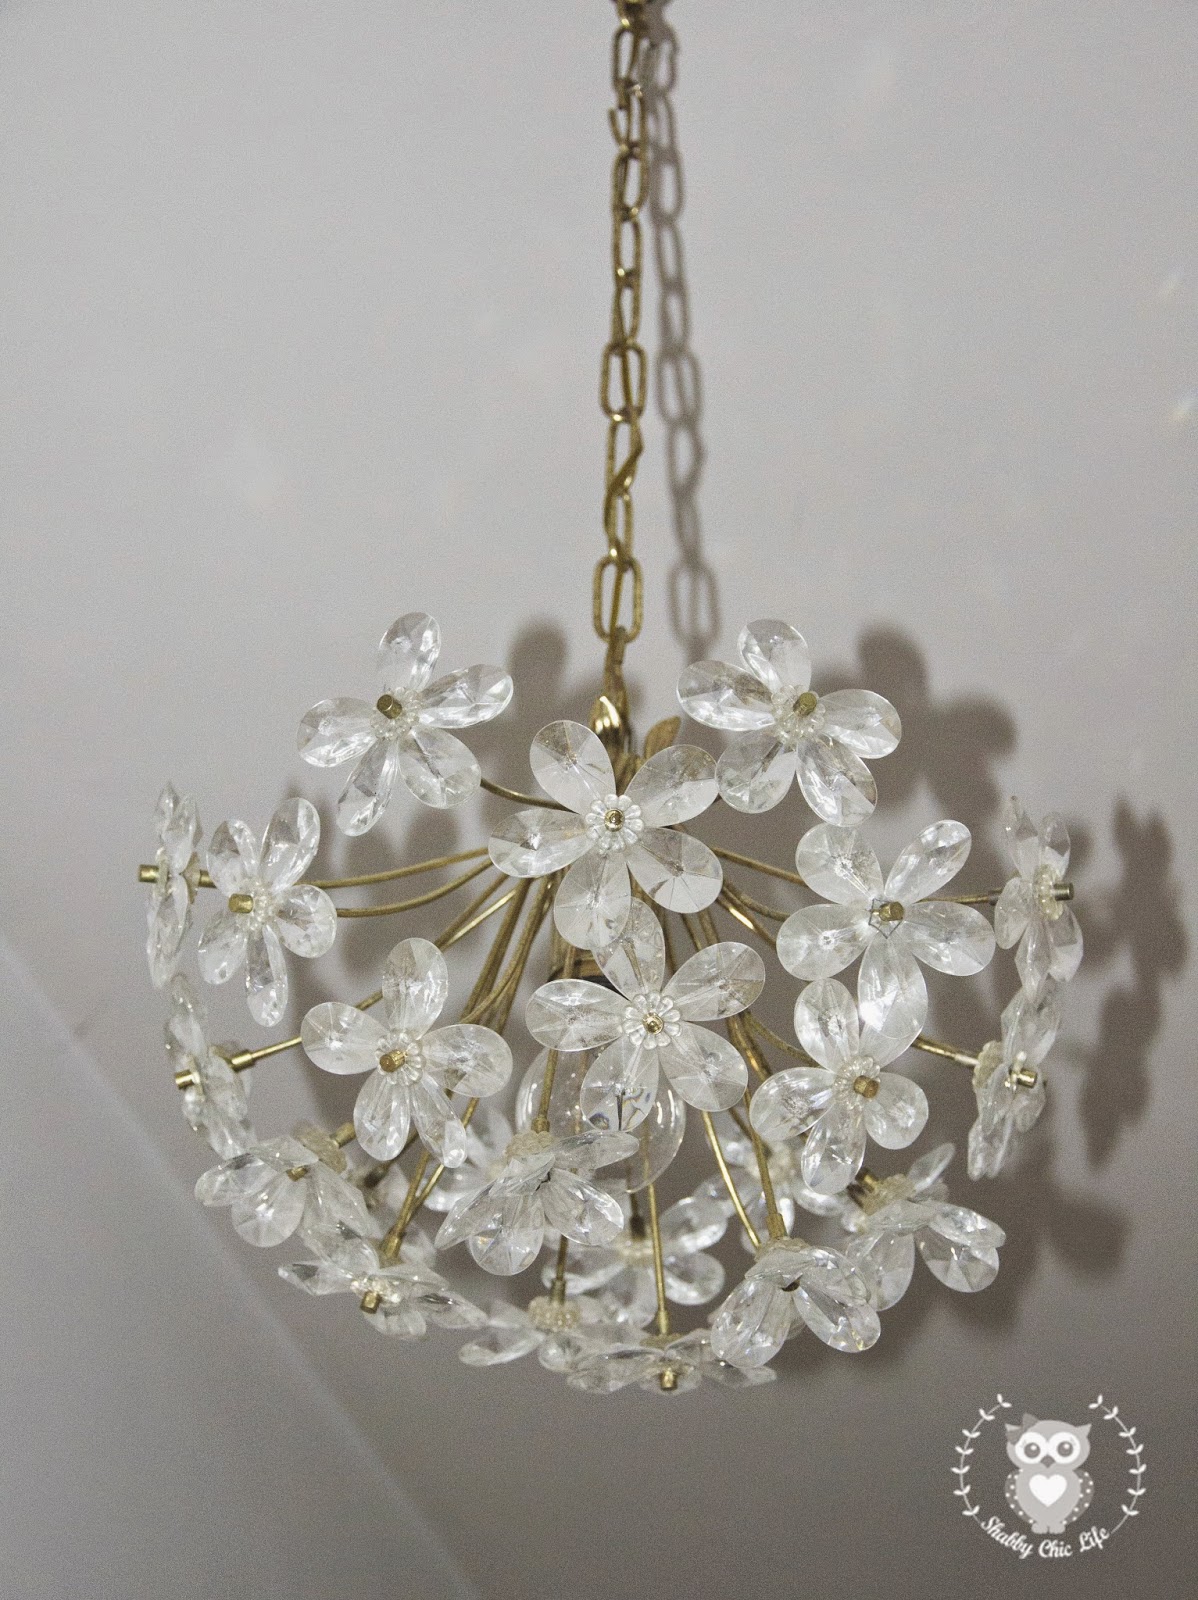 Brocante, antichità lampadario fiori cristallo